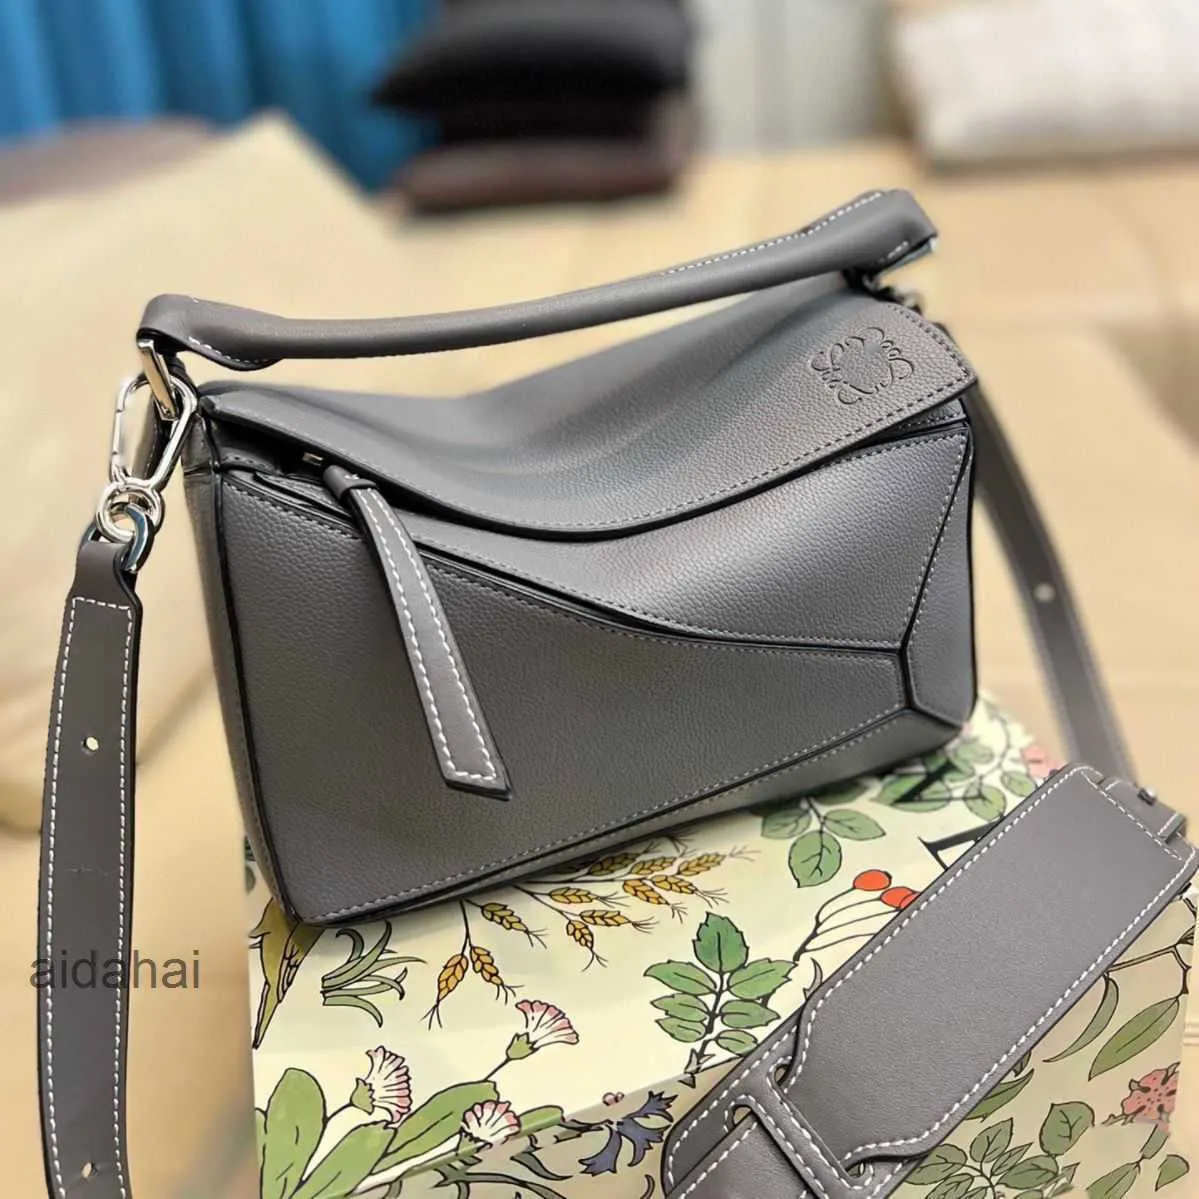 Enjoy marked down designer bags... - Acienda Designer Outlet | Facebook